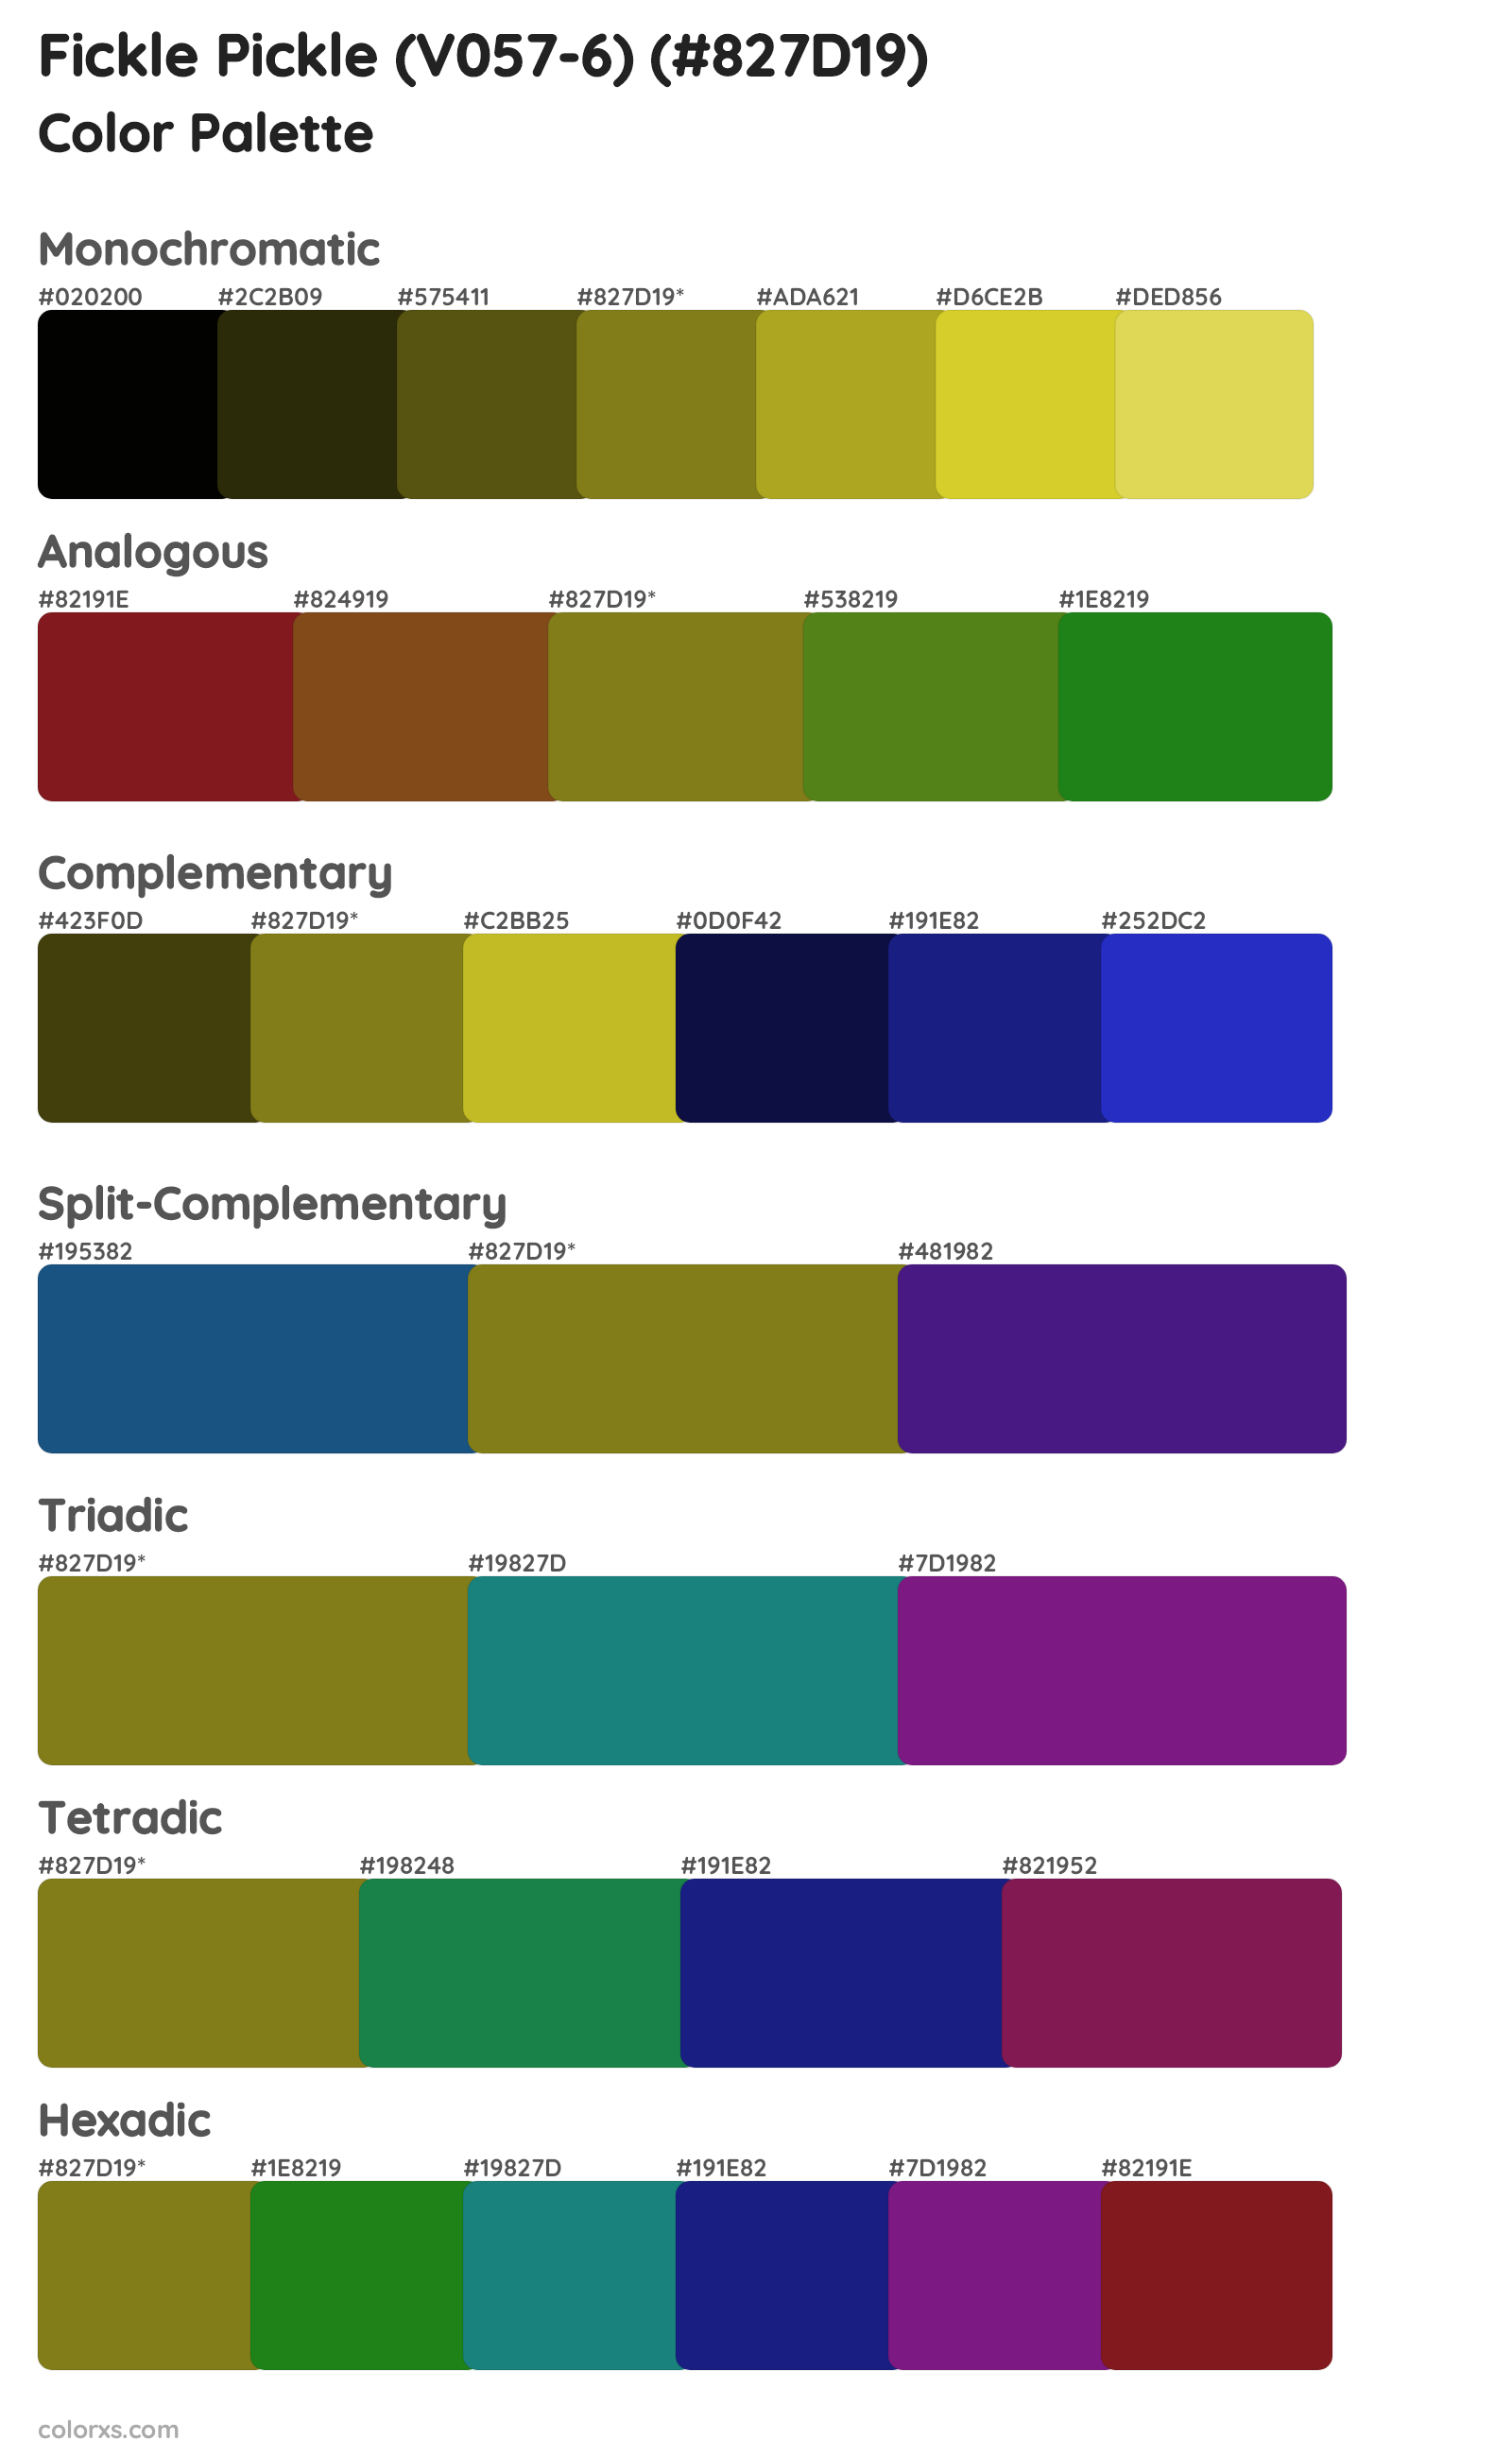 Fickle Pickle (V057-6) Color Scheme Palettes